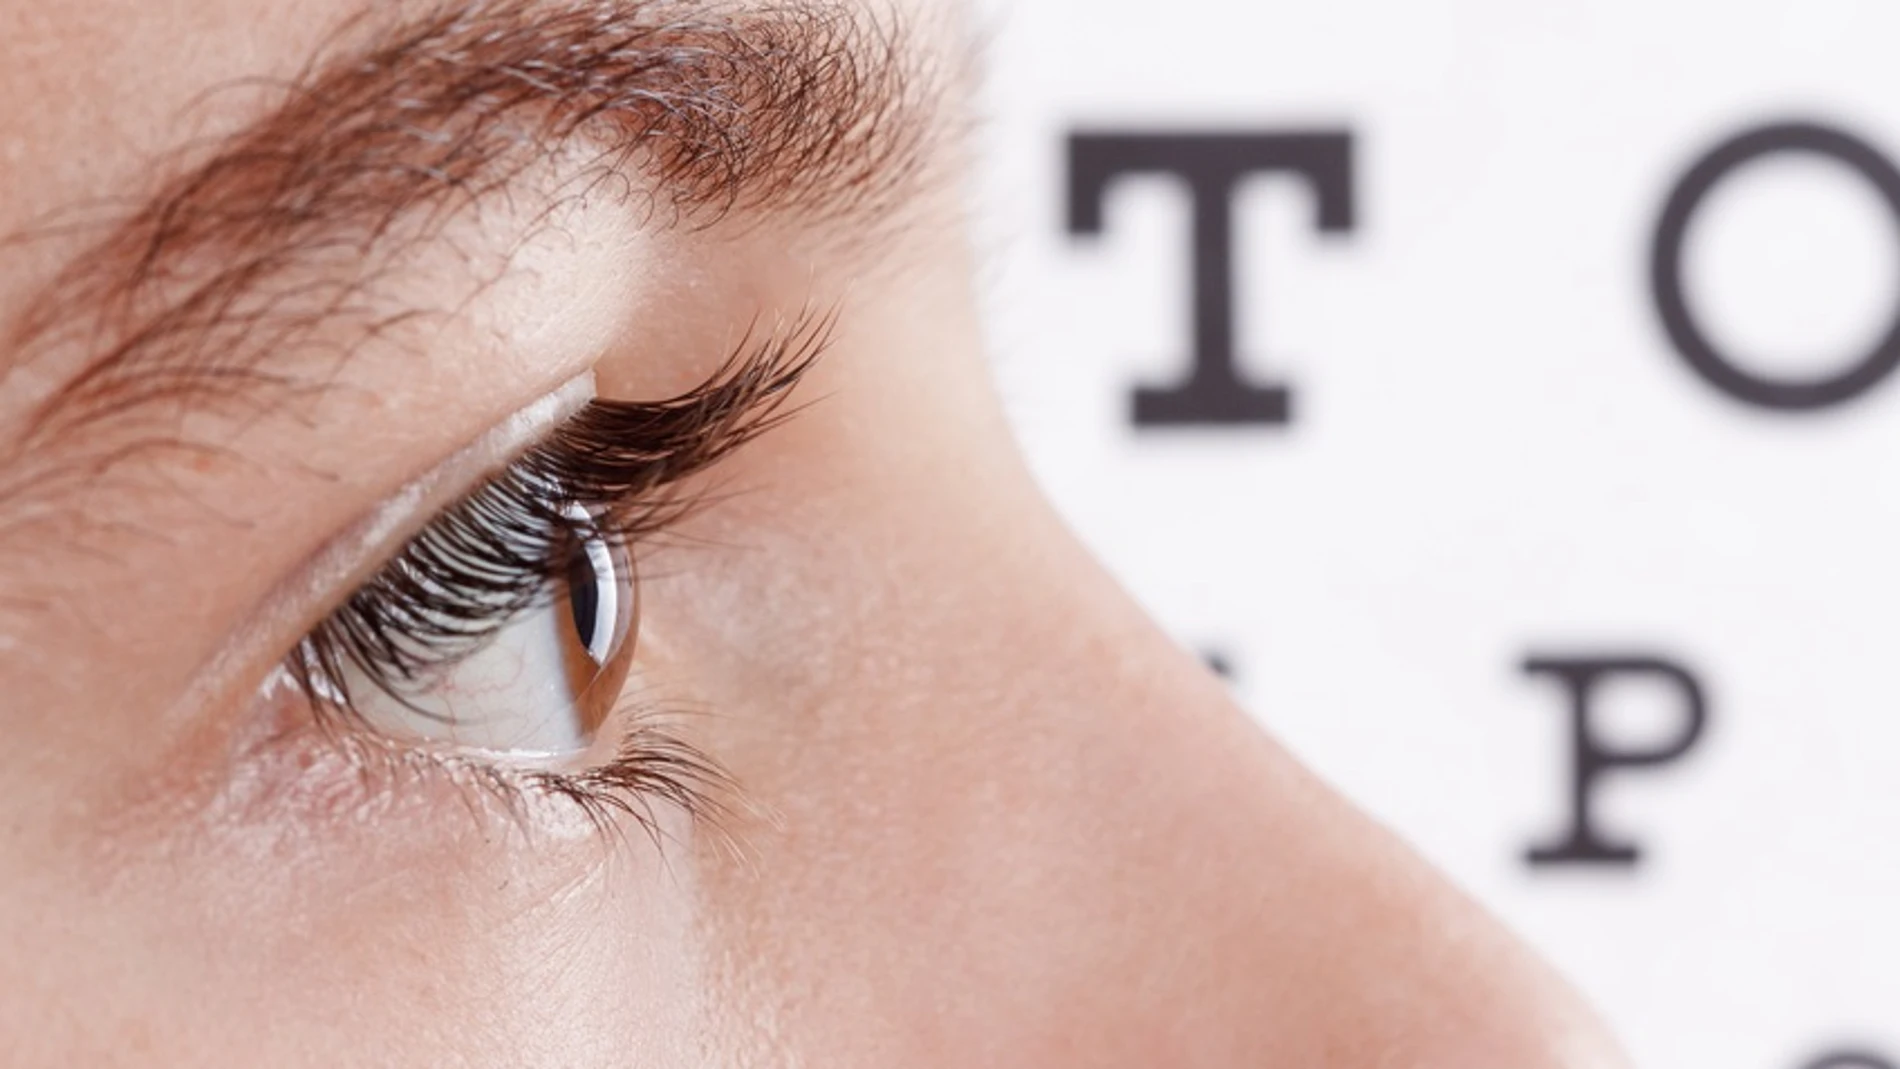 Los investigadores recomienda realizar un examen oftalmológico para detectar consecuencias potencialmente graves